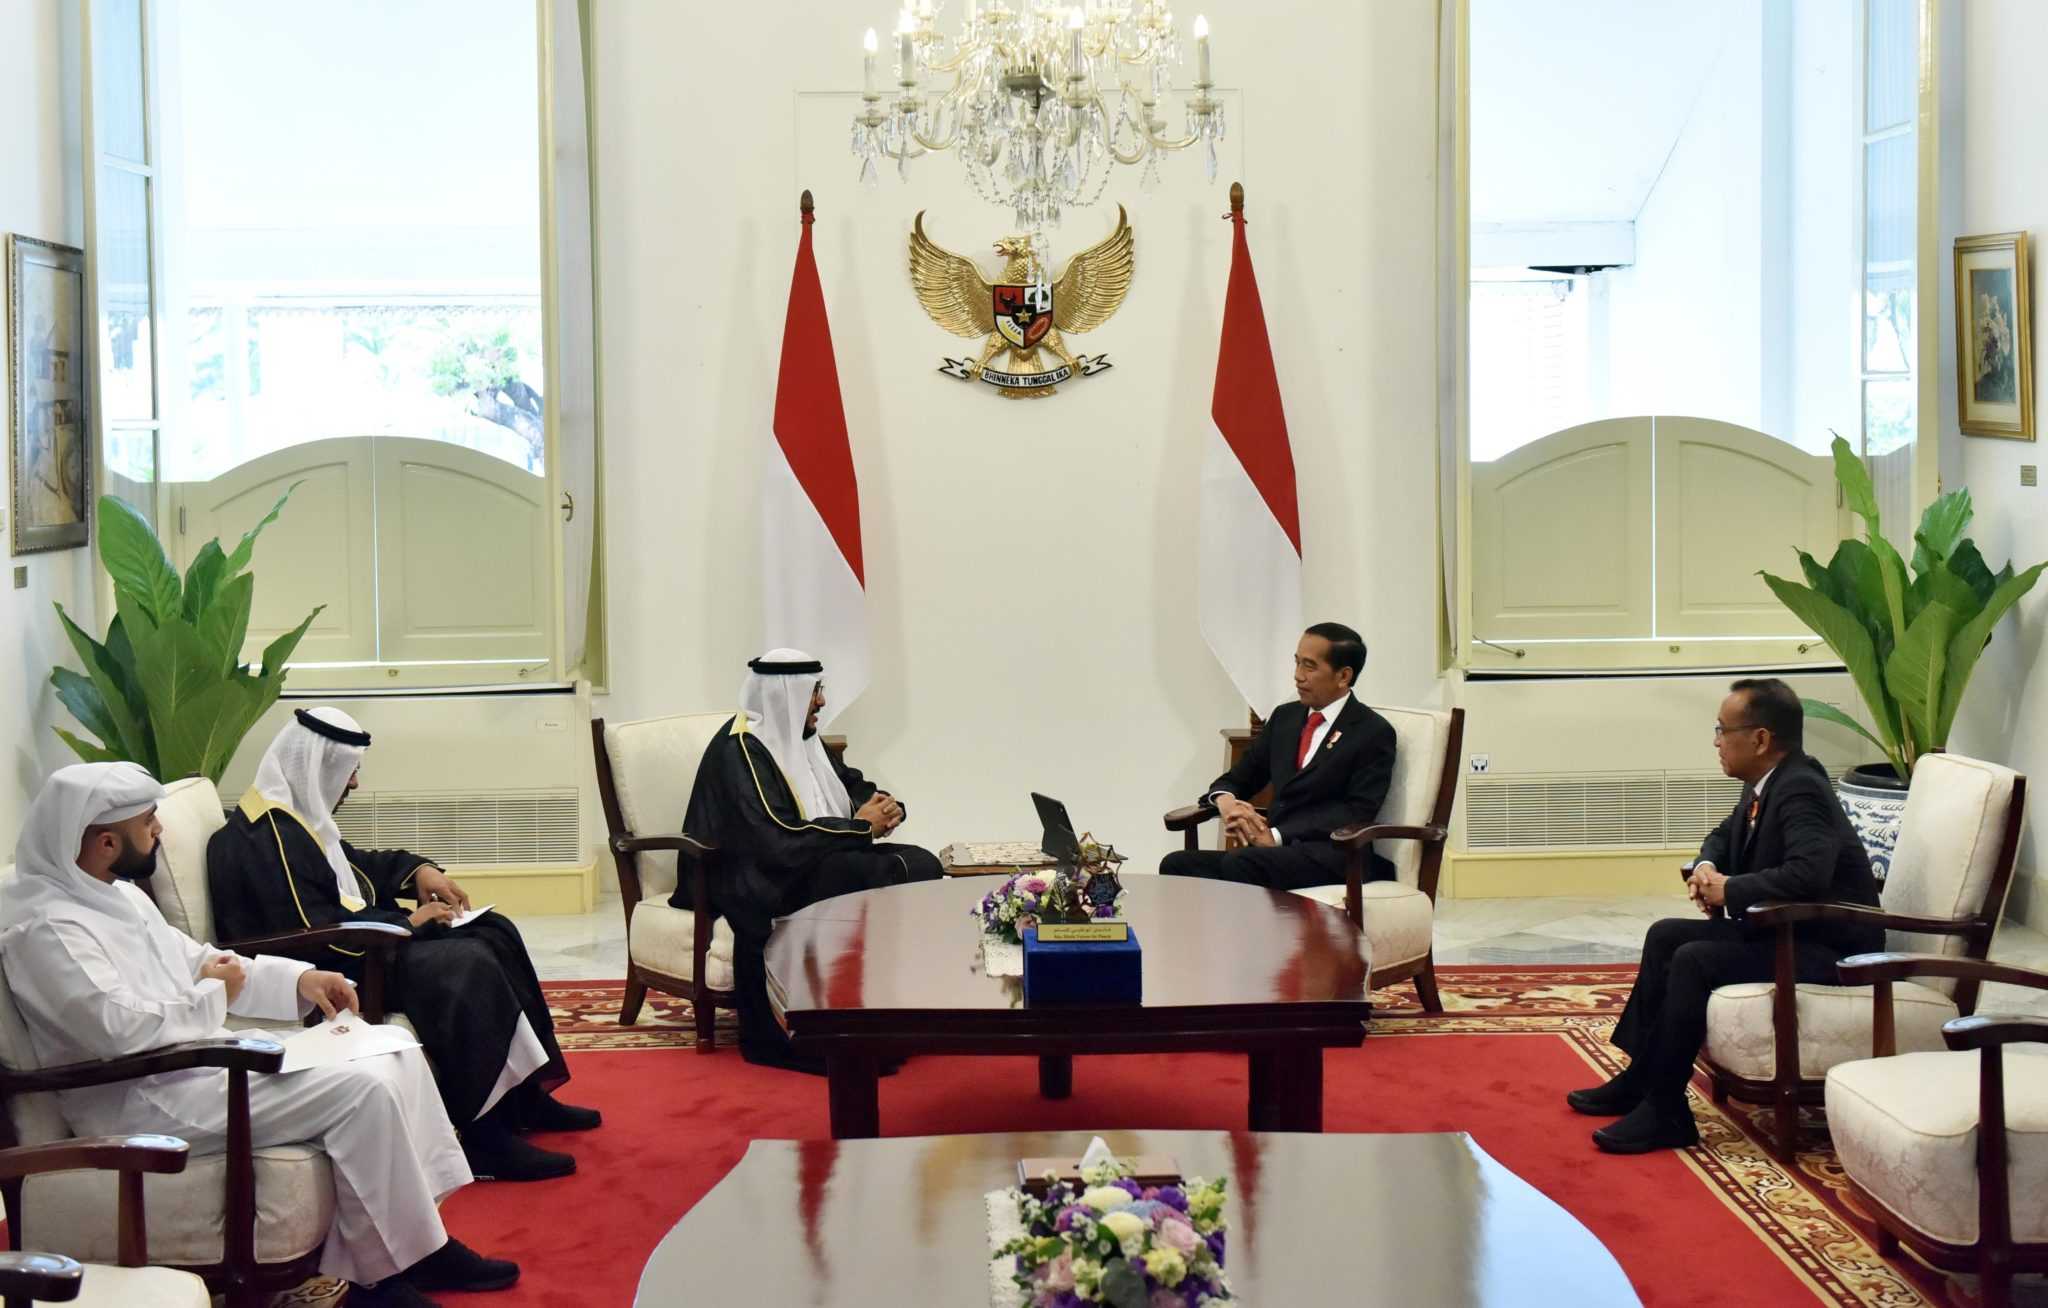 Jokowi Raih Penghargaan Bergengsi Imam Hasan bin Ali Peace Prize dari UEA